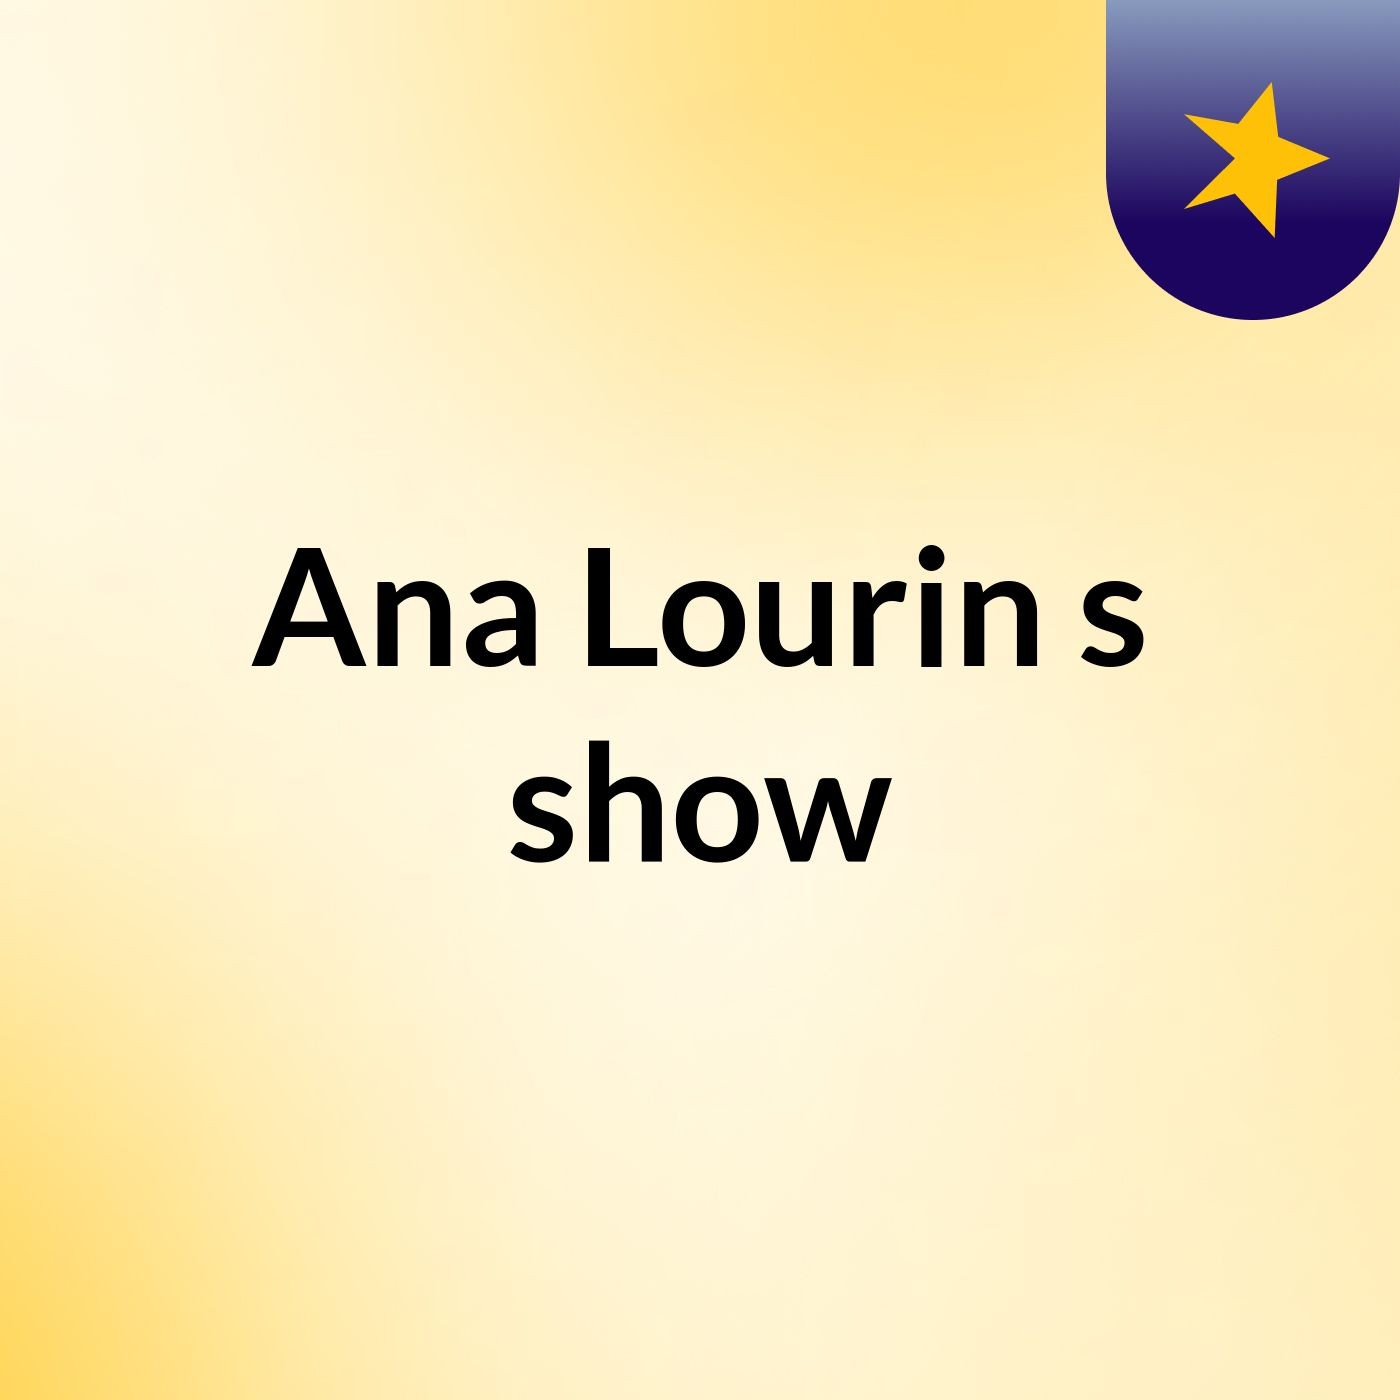 Ana Lourin's show